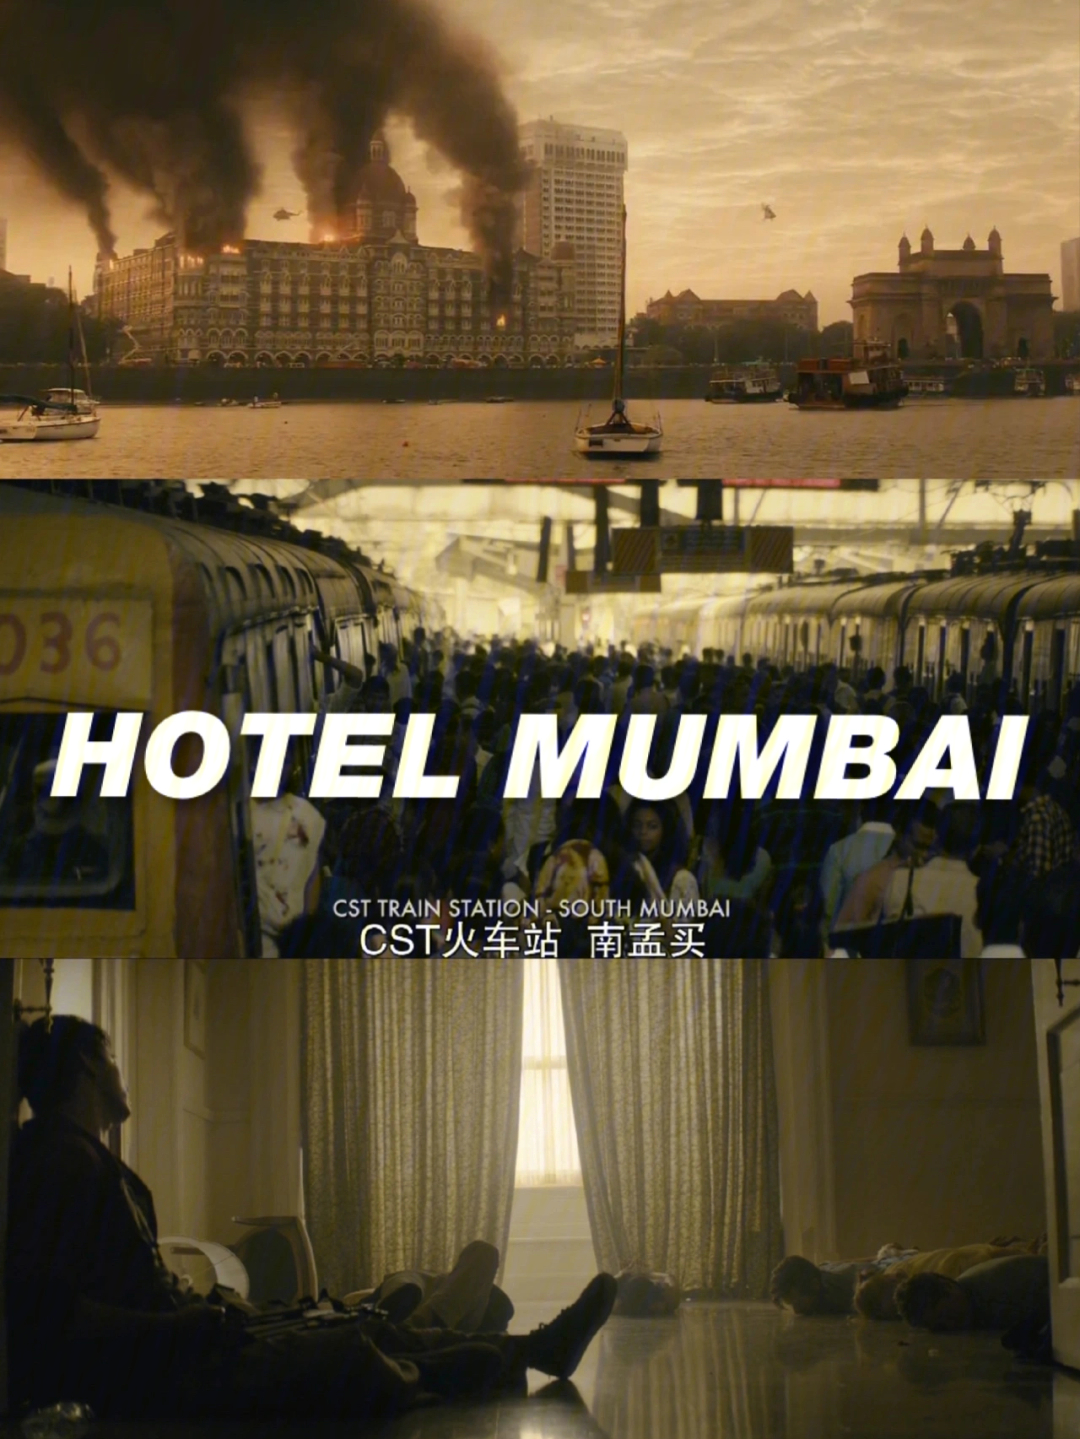 疫情以来尤其喜欢看这样的由真实历史事件改编的电影尤其这部孟买酒店